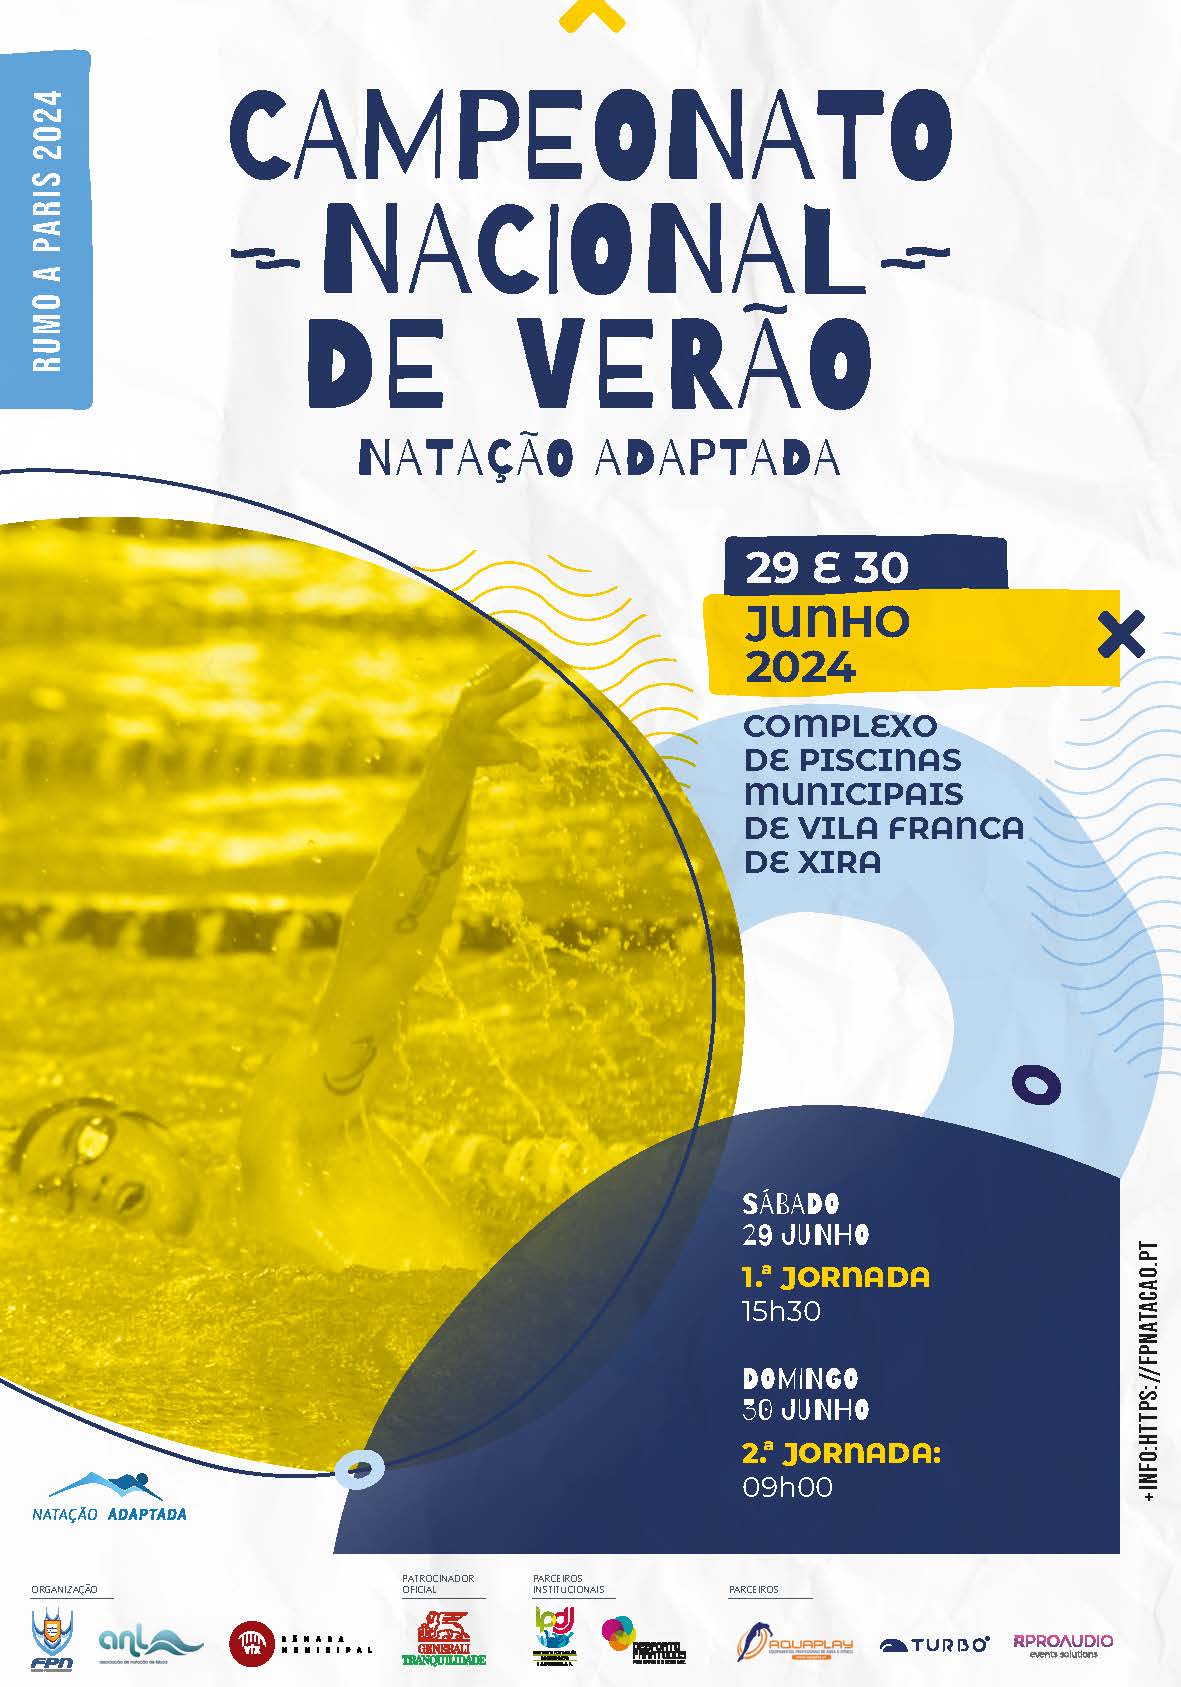 Piscina Municipal de Vila Franca de Xira acolhe o Campeonato Nacional de Verão de Natação Adaptada